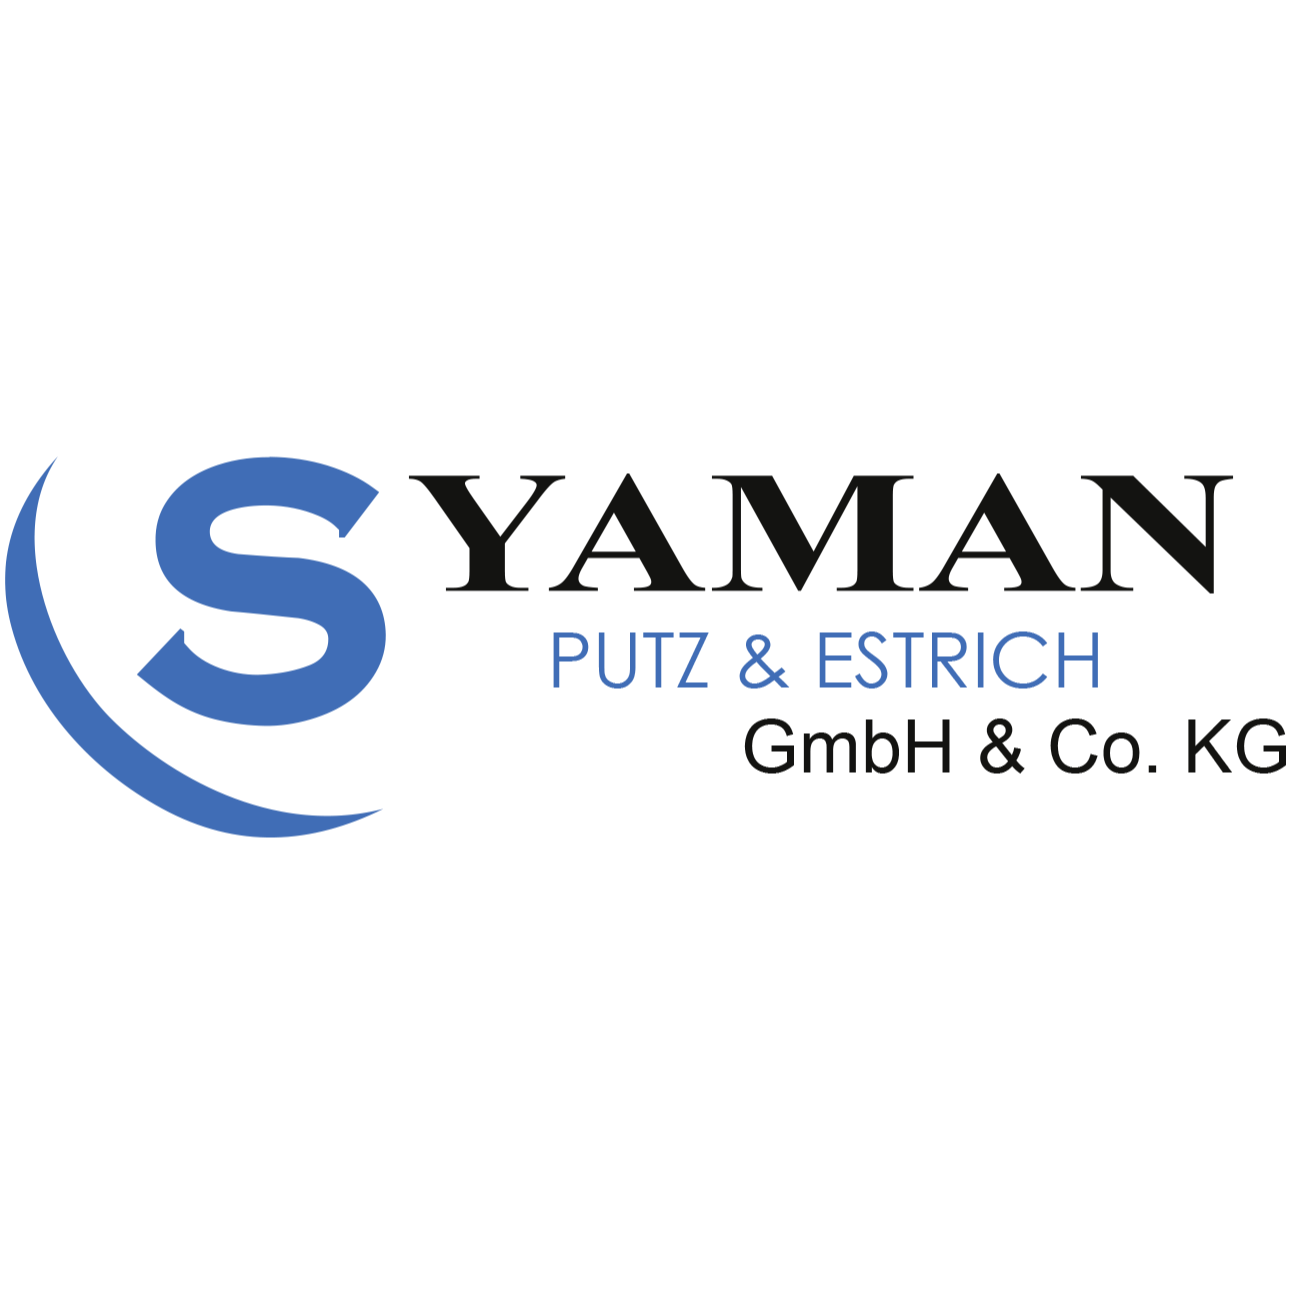 S. Yaman Putz & Estrich GmbH & Co. KG Logo